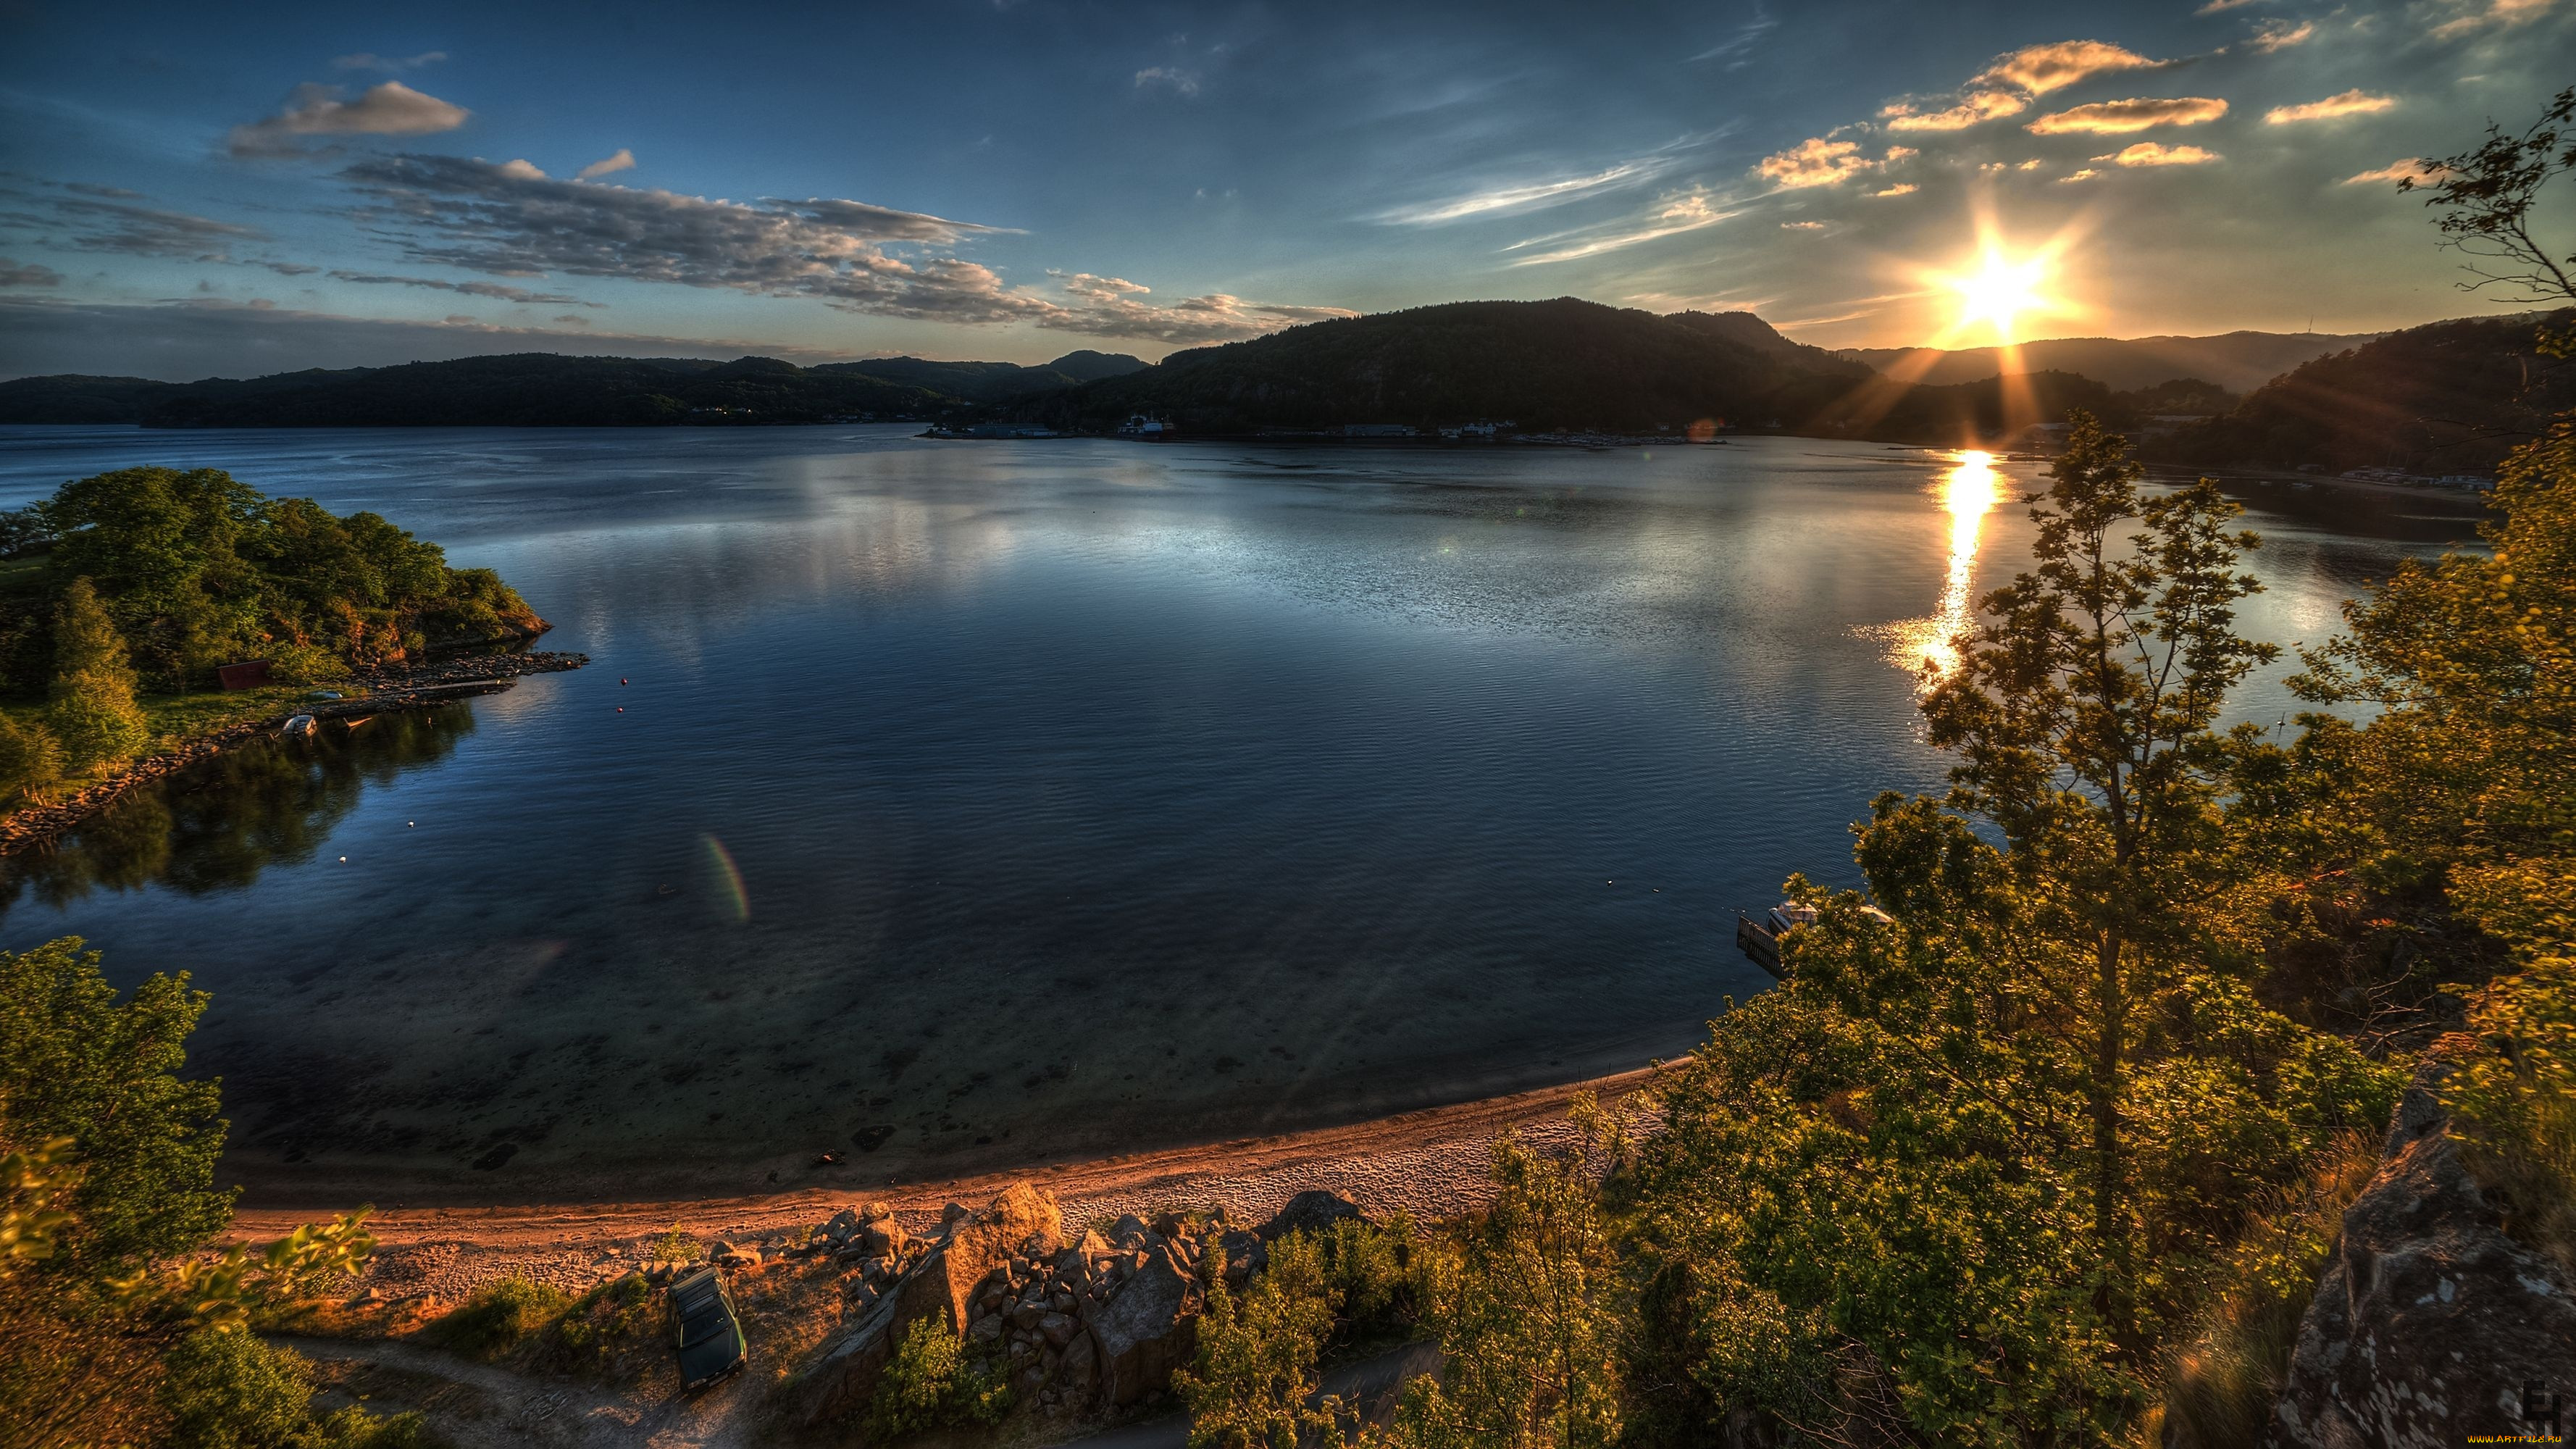 Картинки на заставку. Озеро Тургояк. Красивый пейзаж. Спокойная природа. Спокойное озеро.